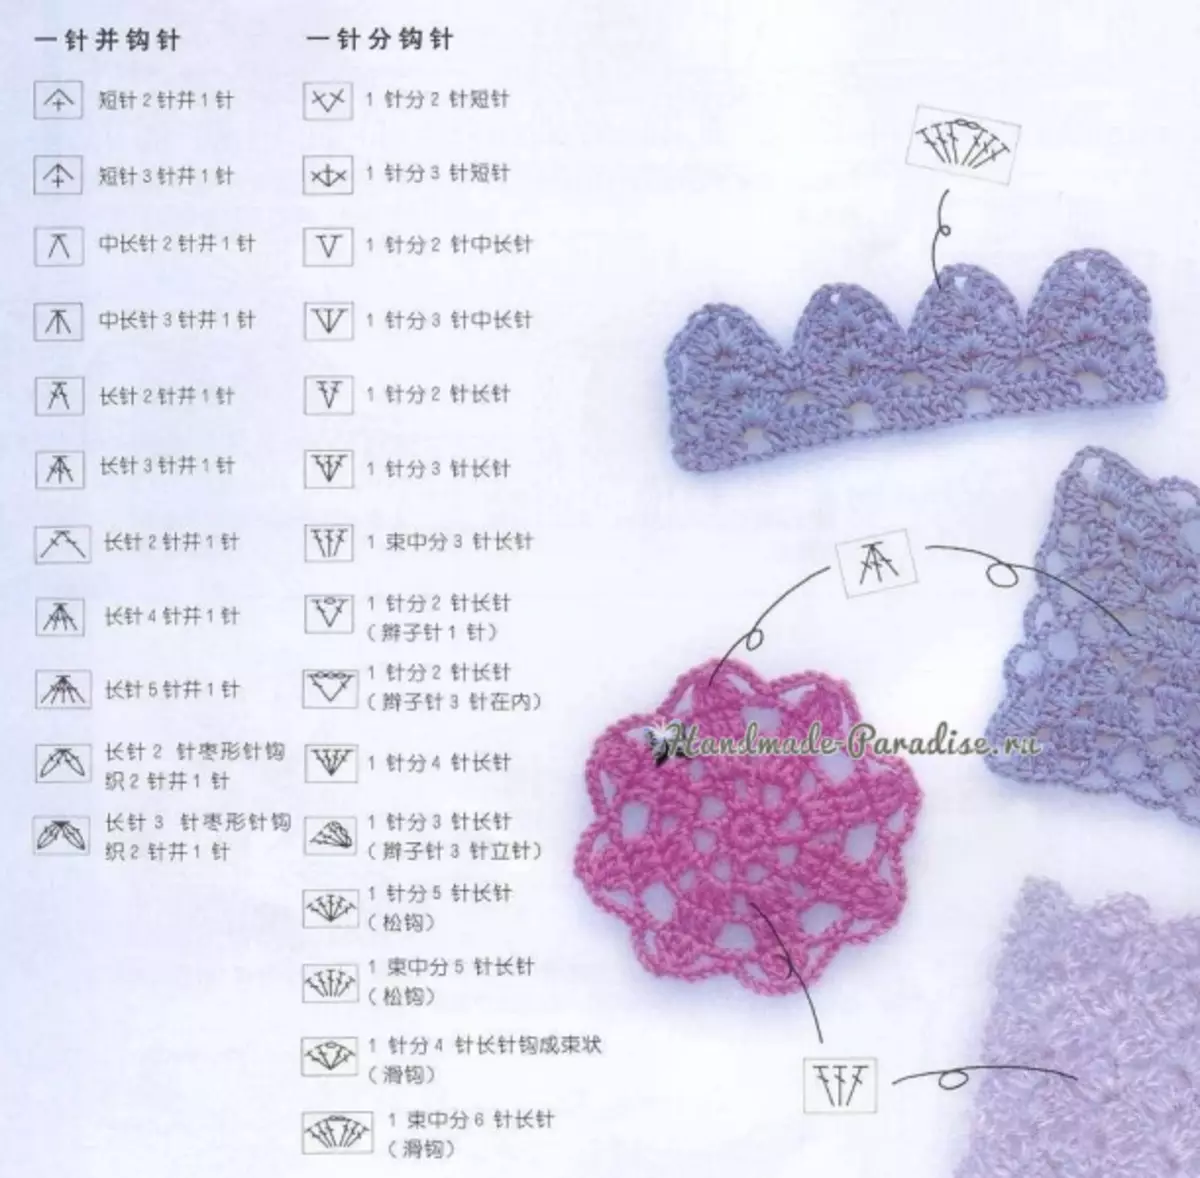 Ինչպես crochet չինական սխեմաներում